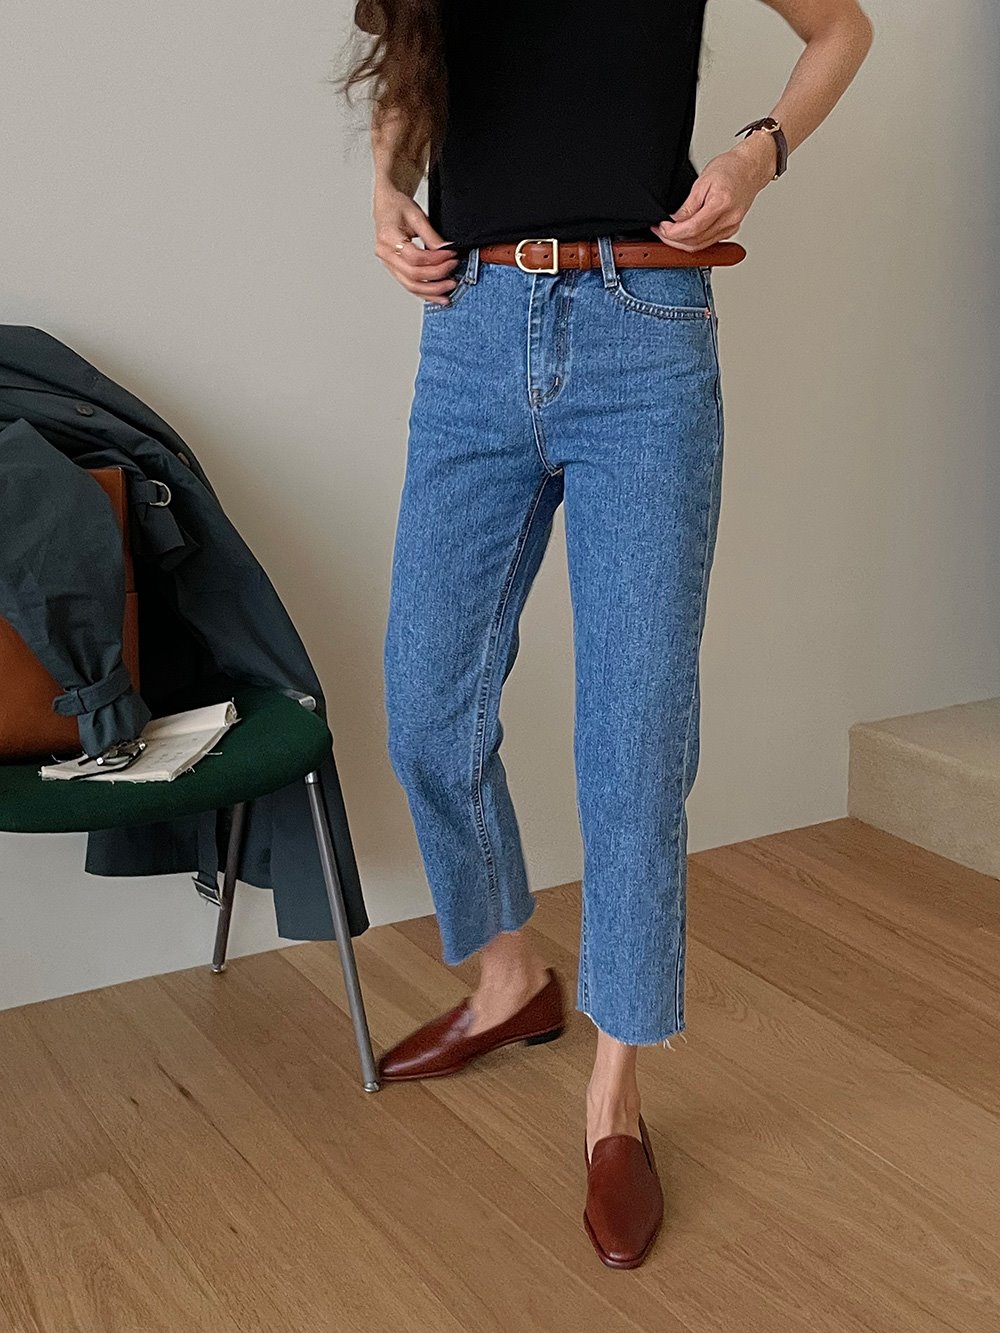 Fela Denim Pants (2color) * 세일상품은 제한된 수량으로, 신중한 구매부탁드립니다. *